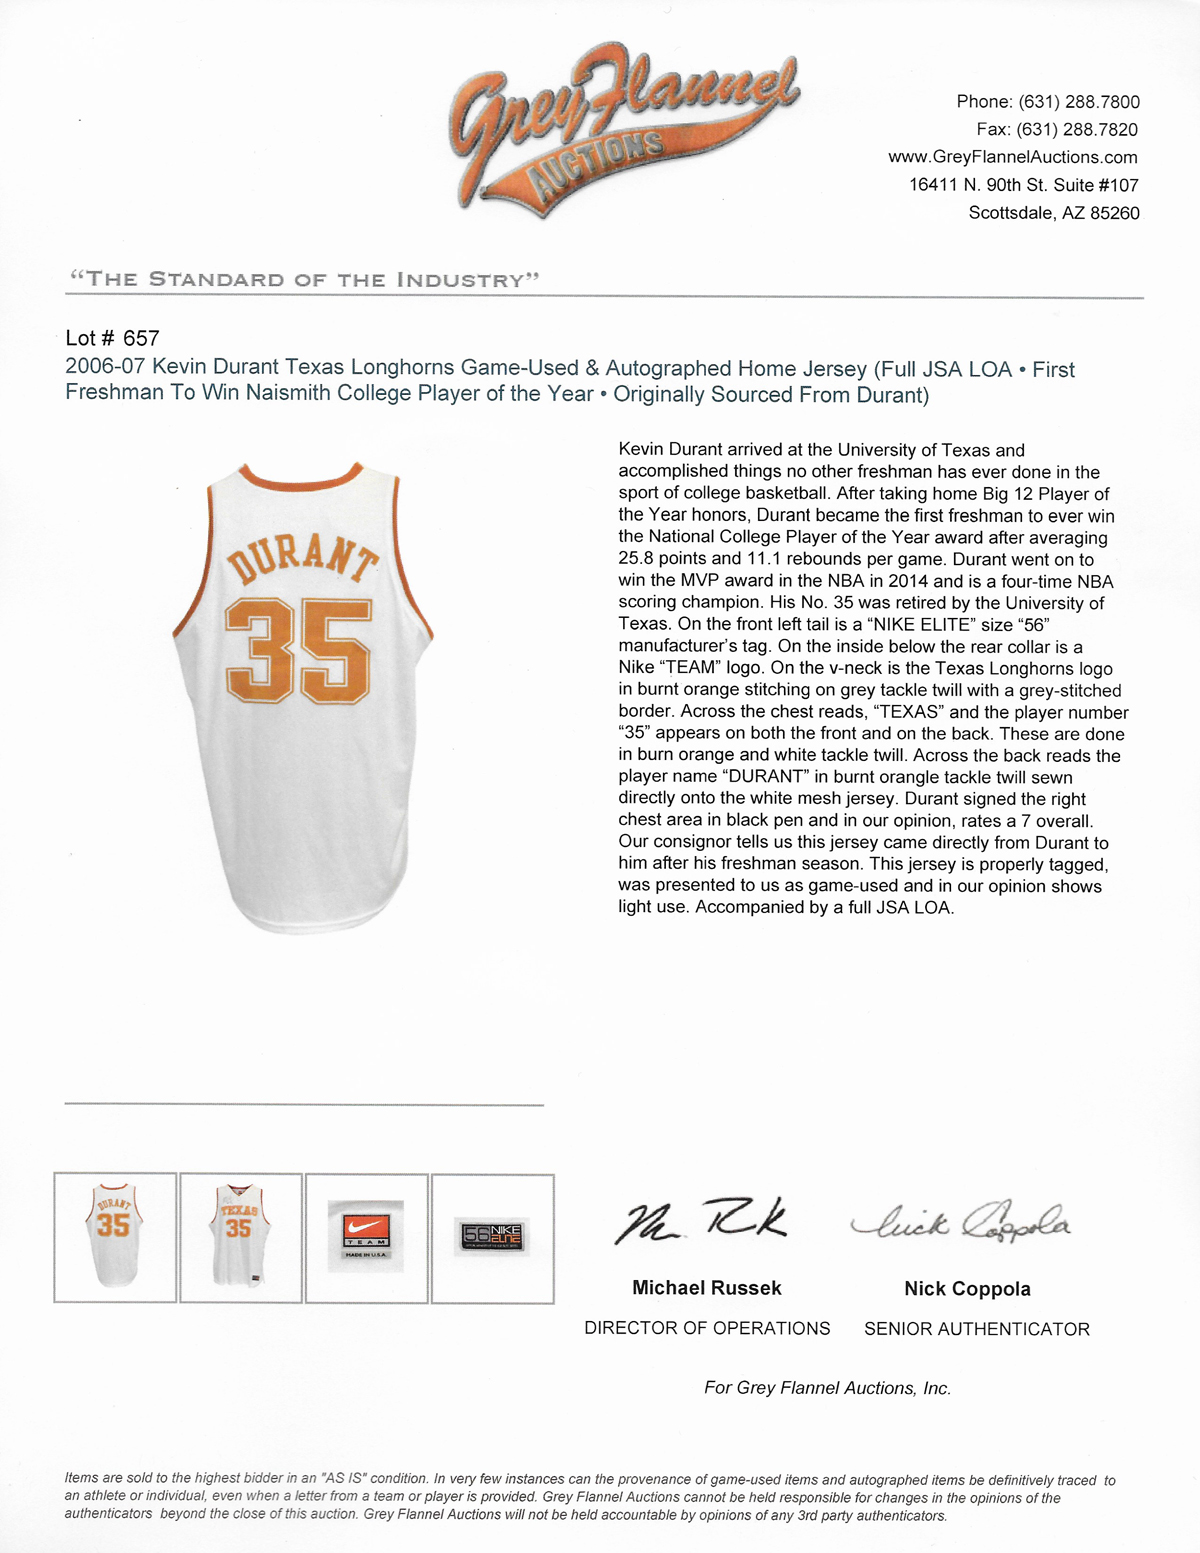 Texas Longhorns Kevin Durant Autographed Orange Authentic